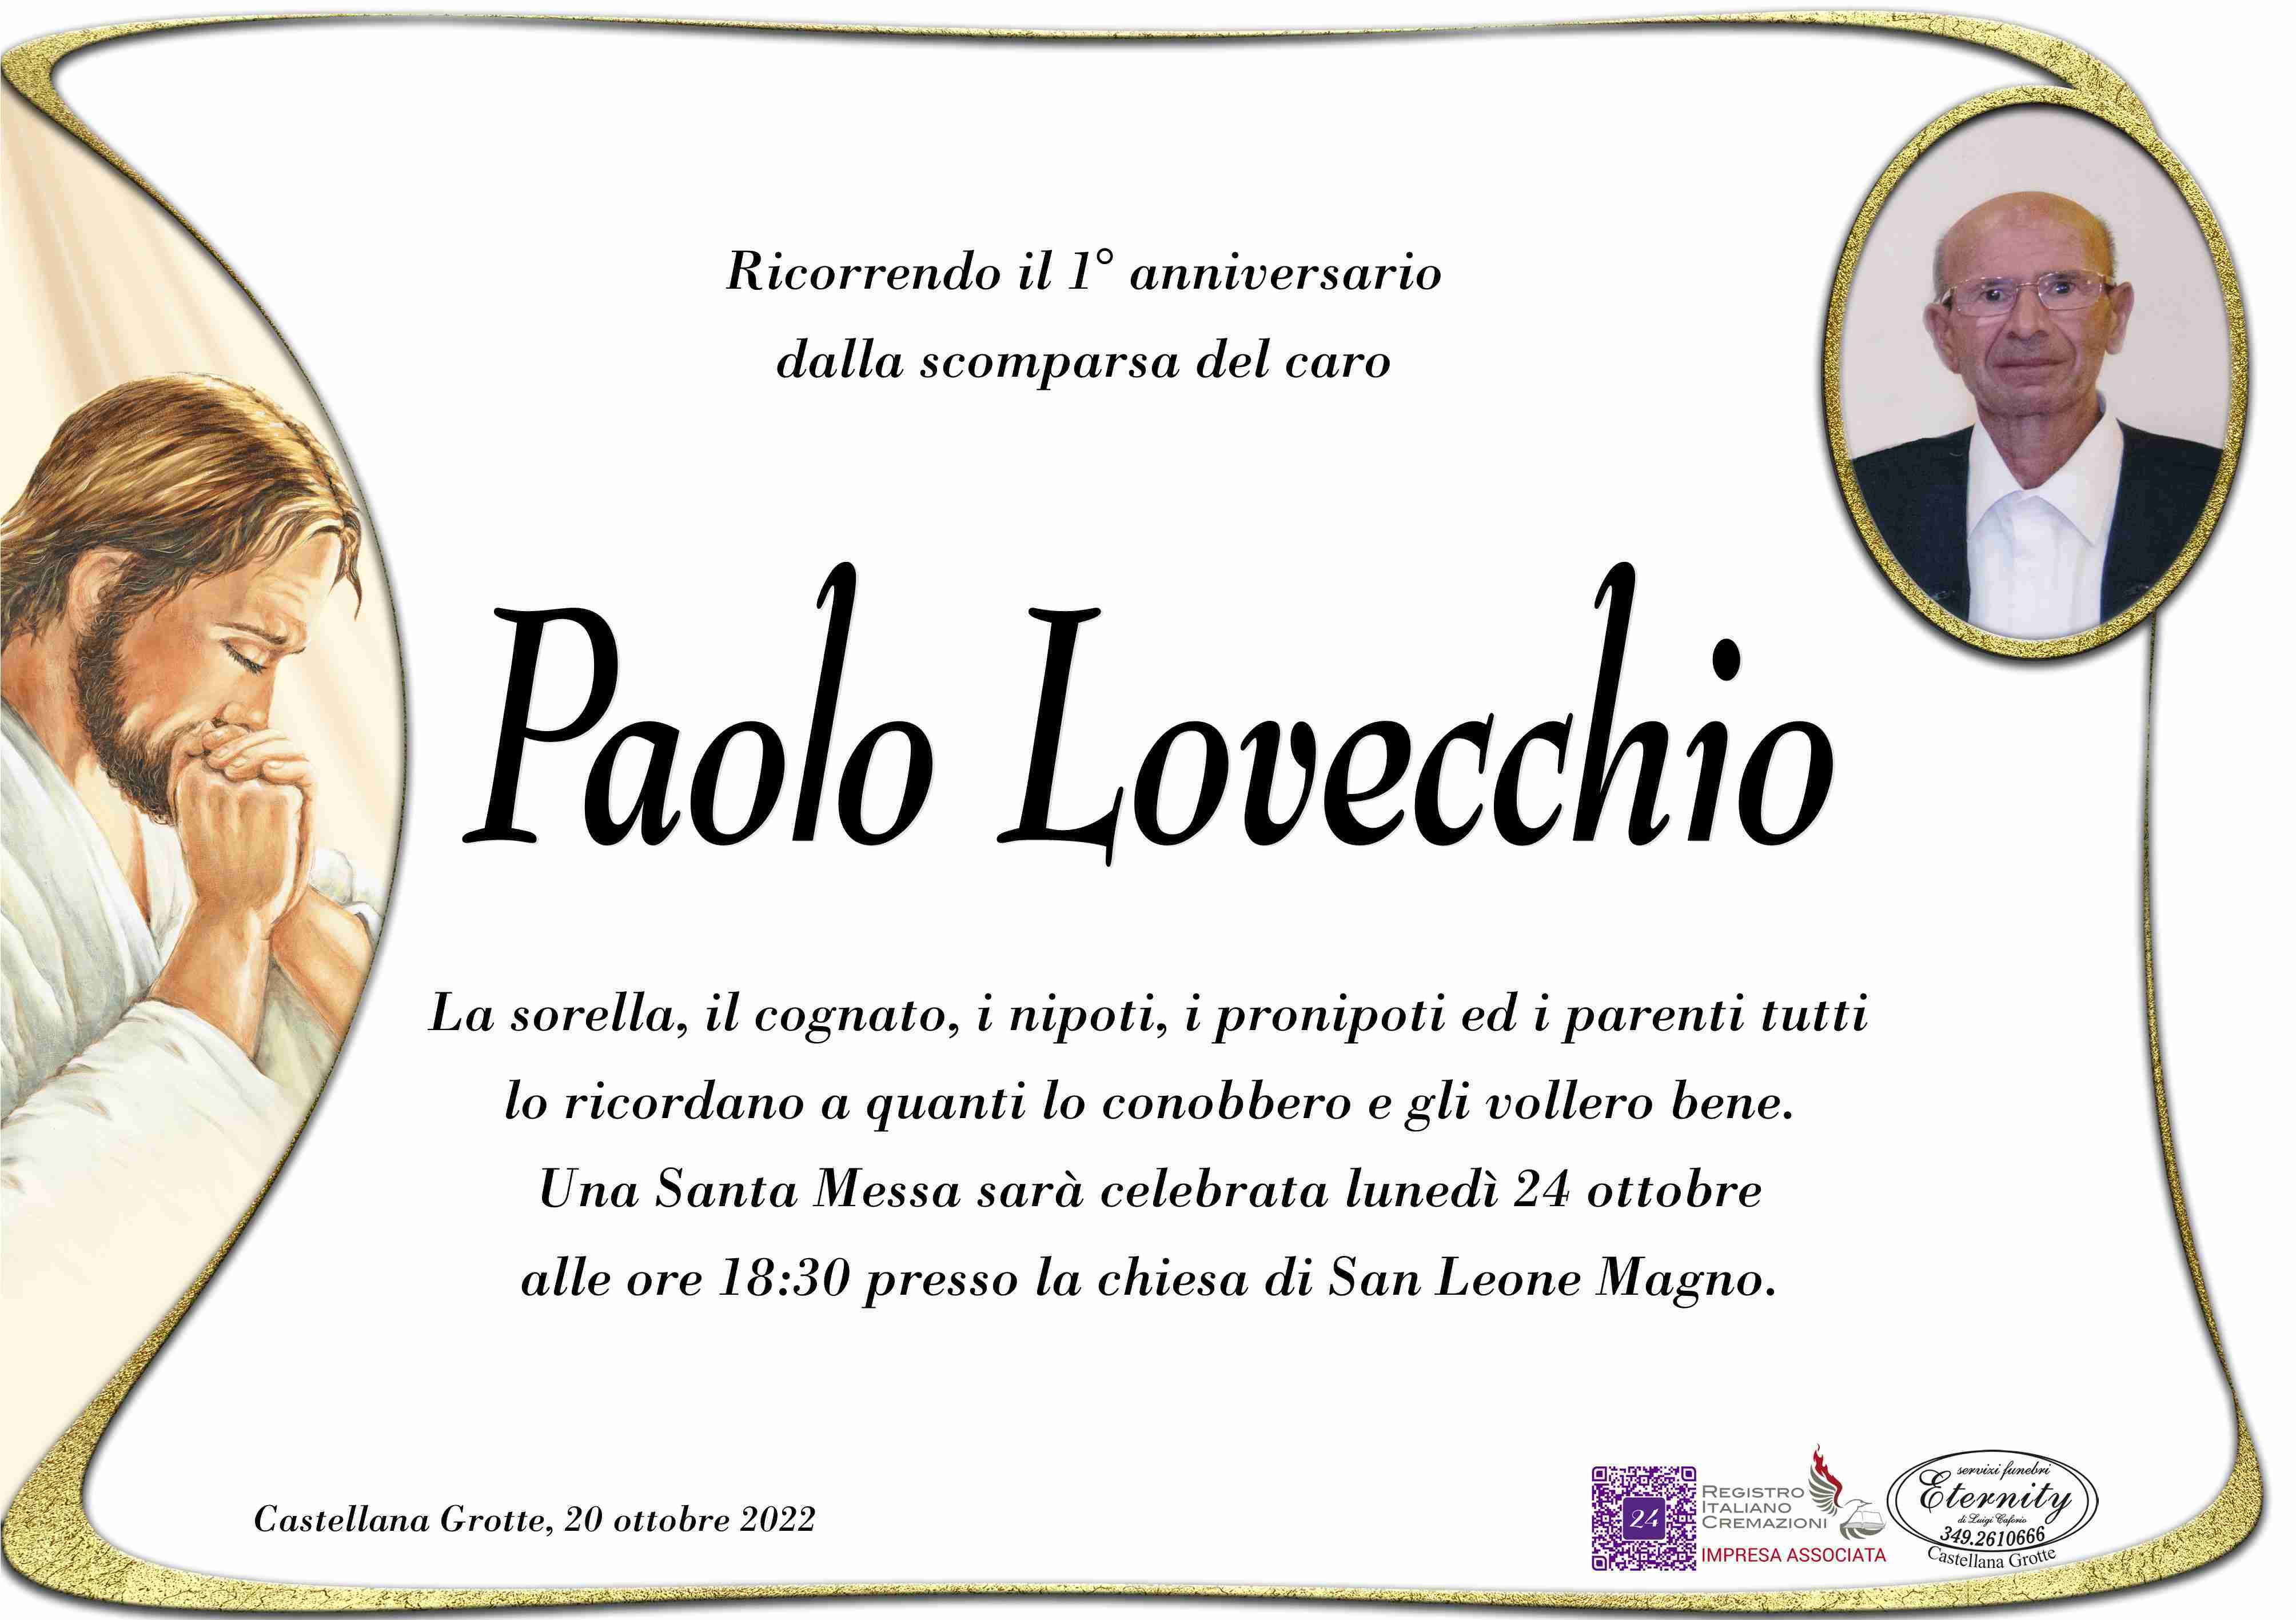 Paolo Lovecchio